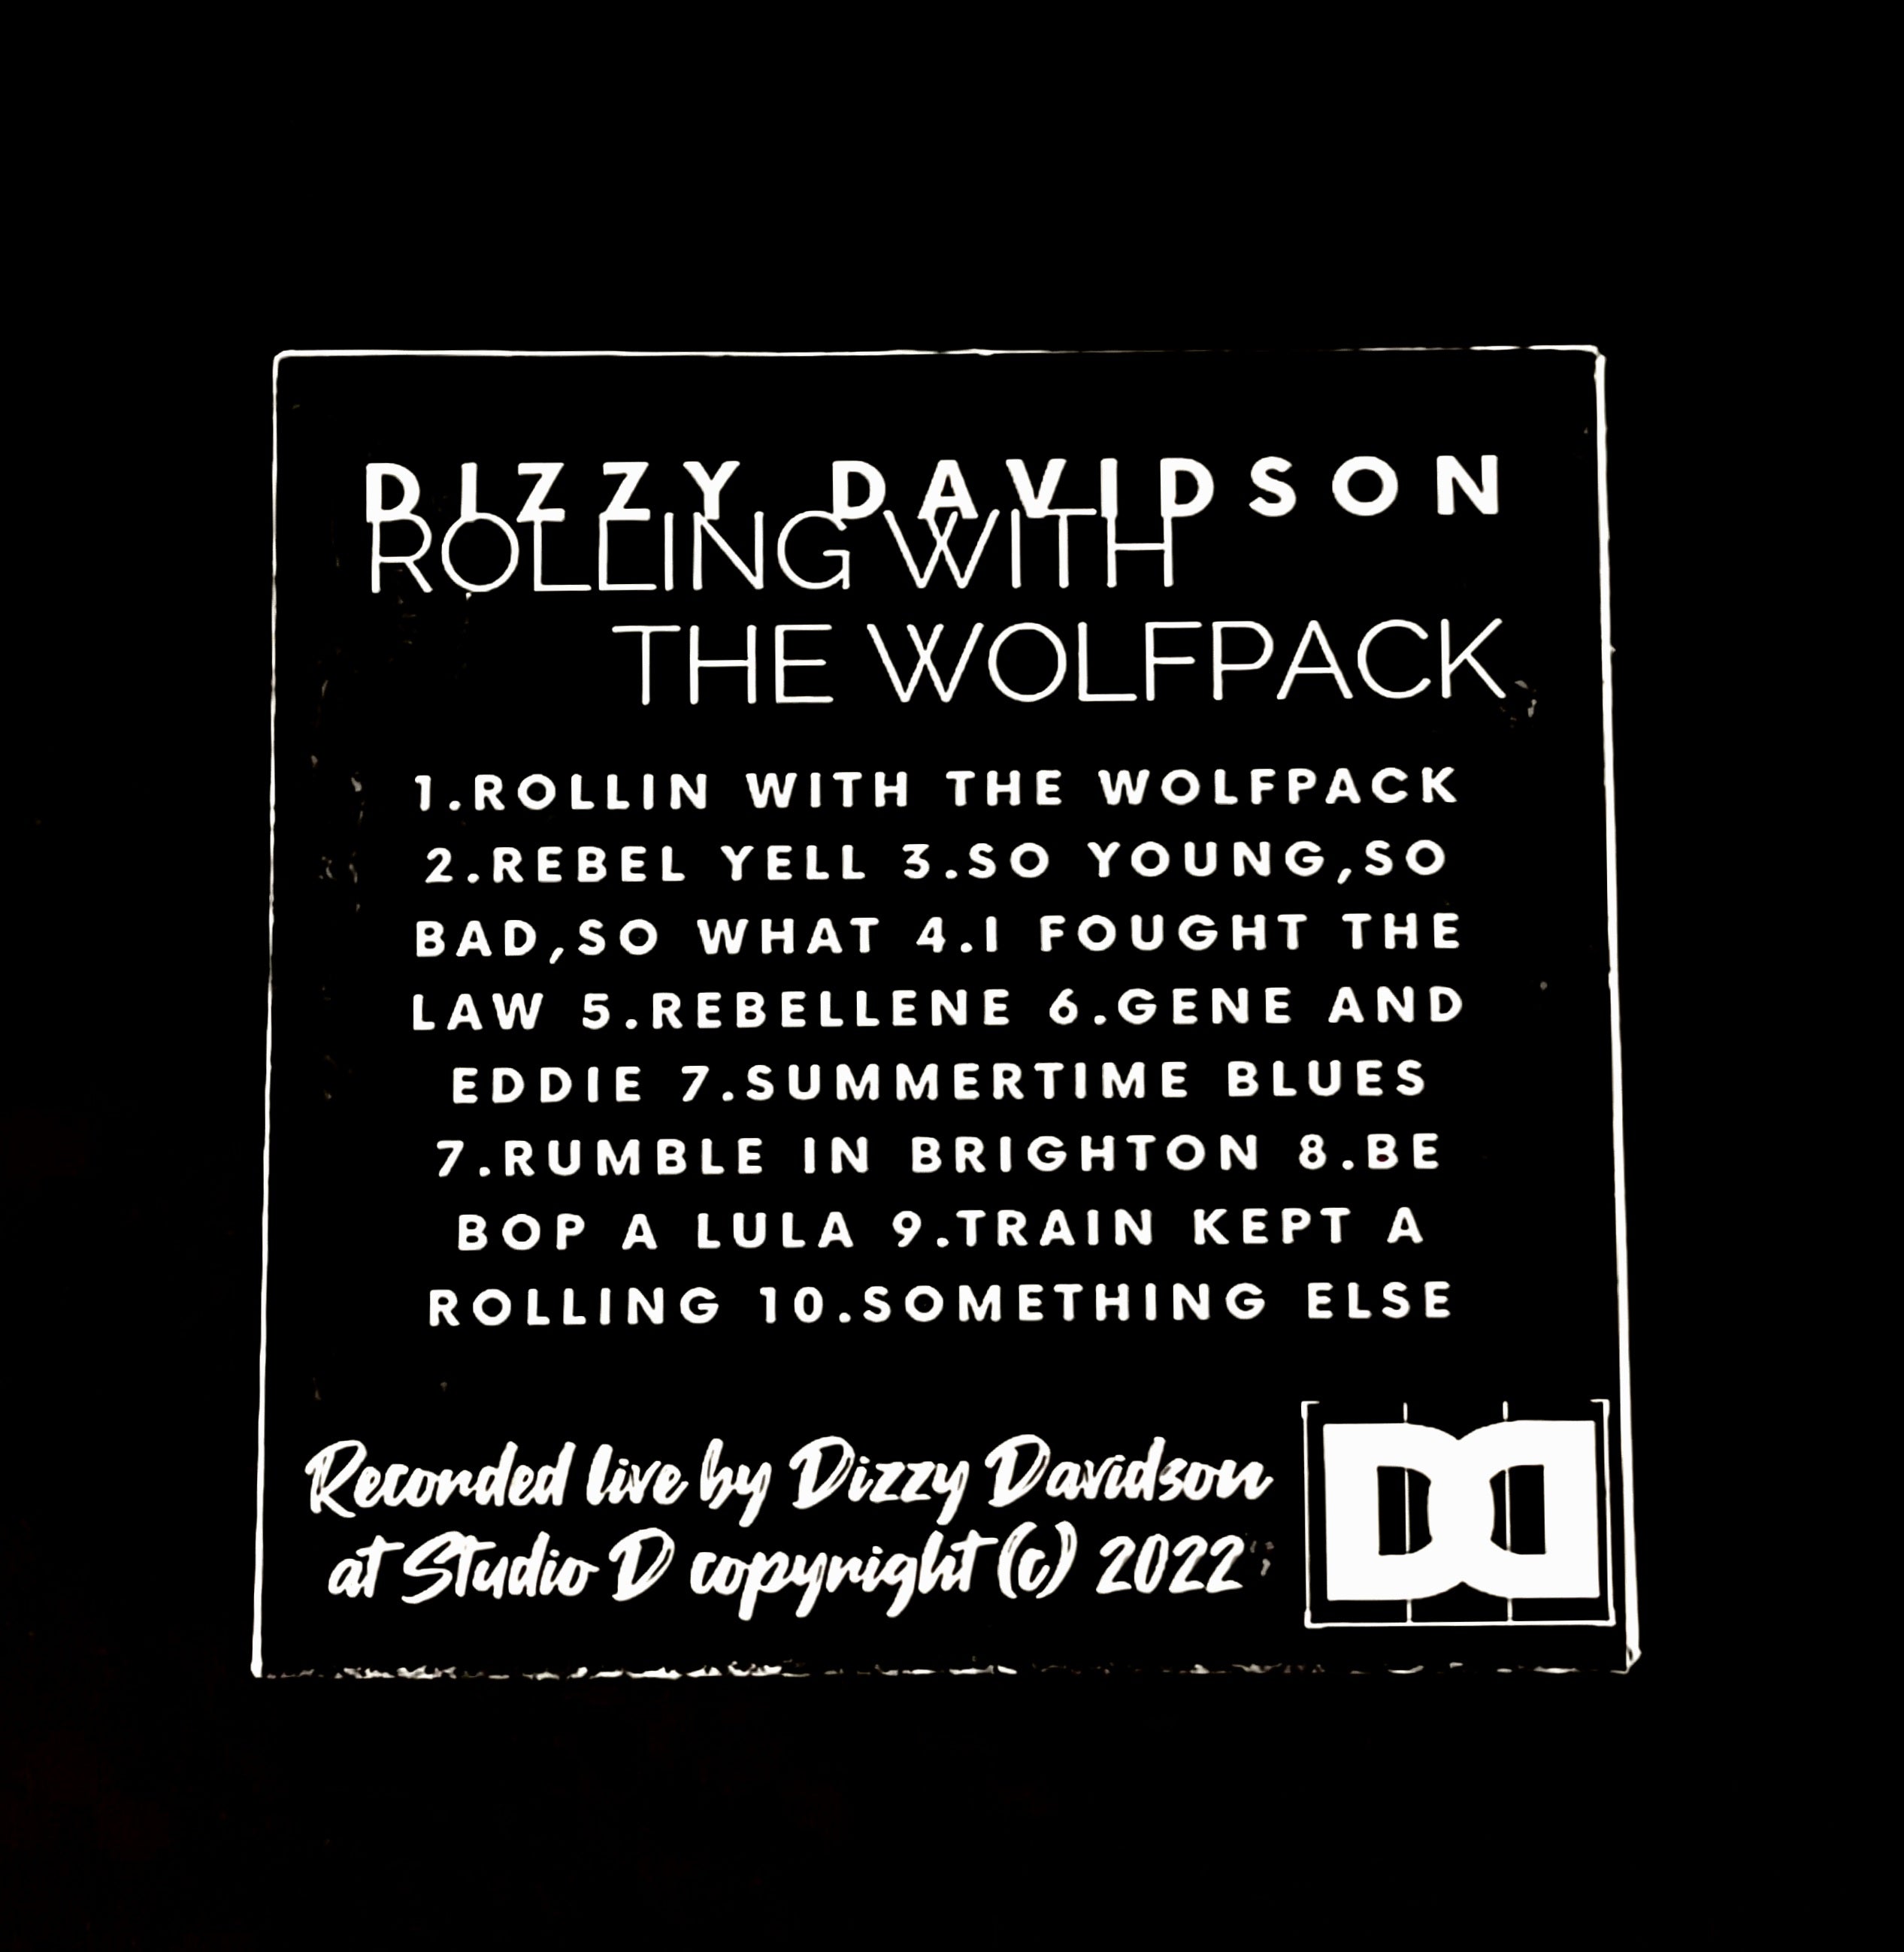 Dizzy Davidson - 